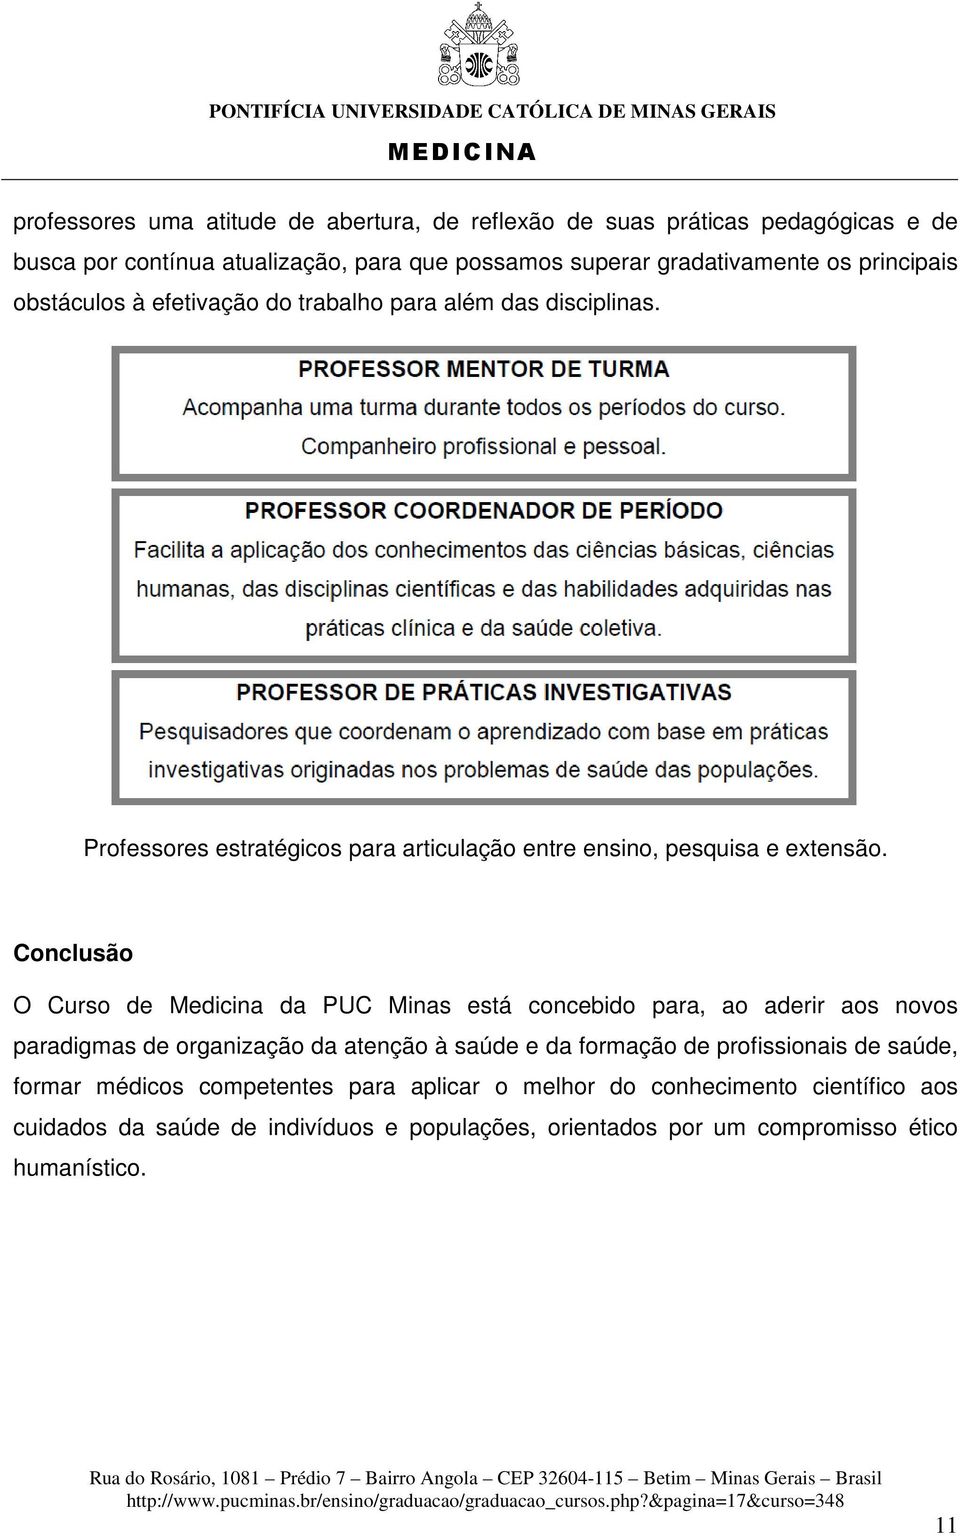 Conclusão O Curso de Medicina da PUC Minas está concebido para, ao aderir aos novos paradigmas de organização da atenção à saúde e da formação de profissionais de